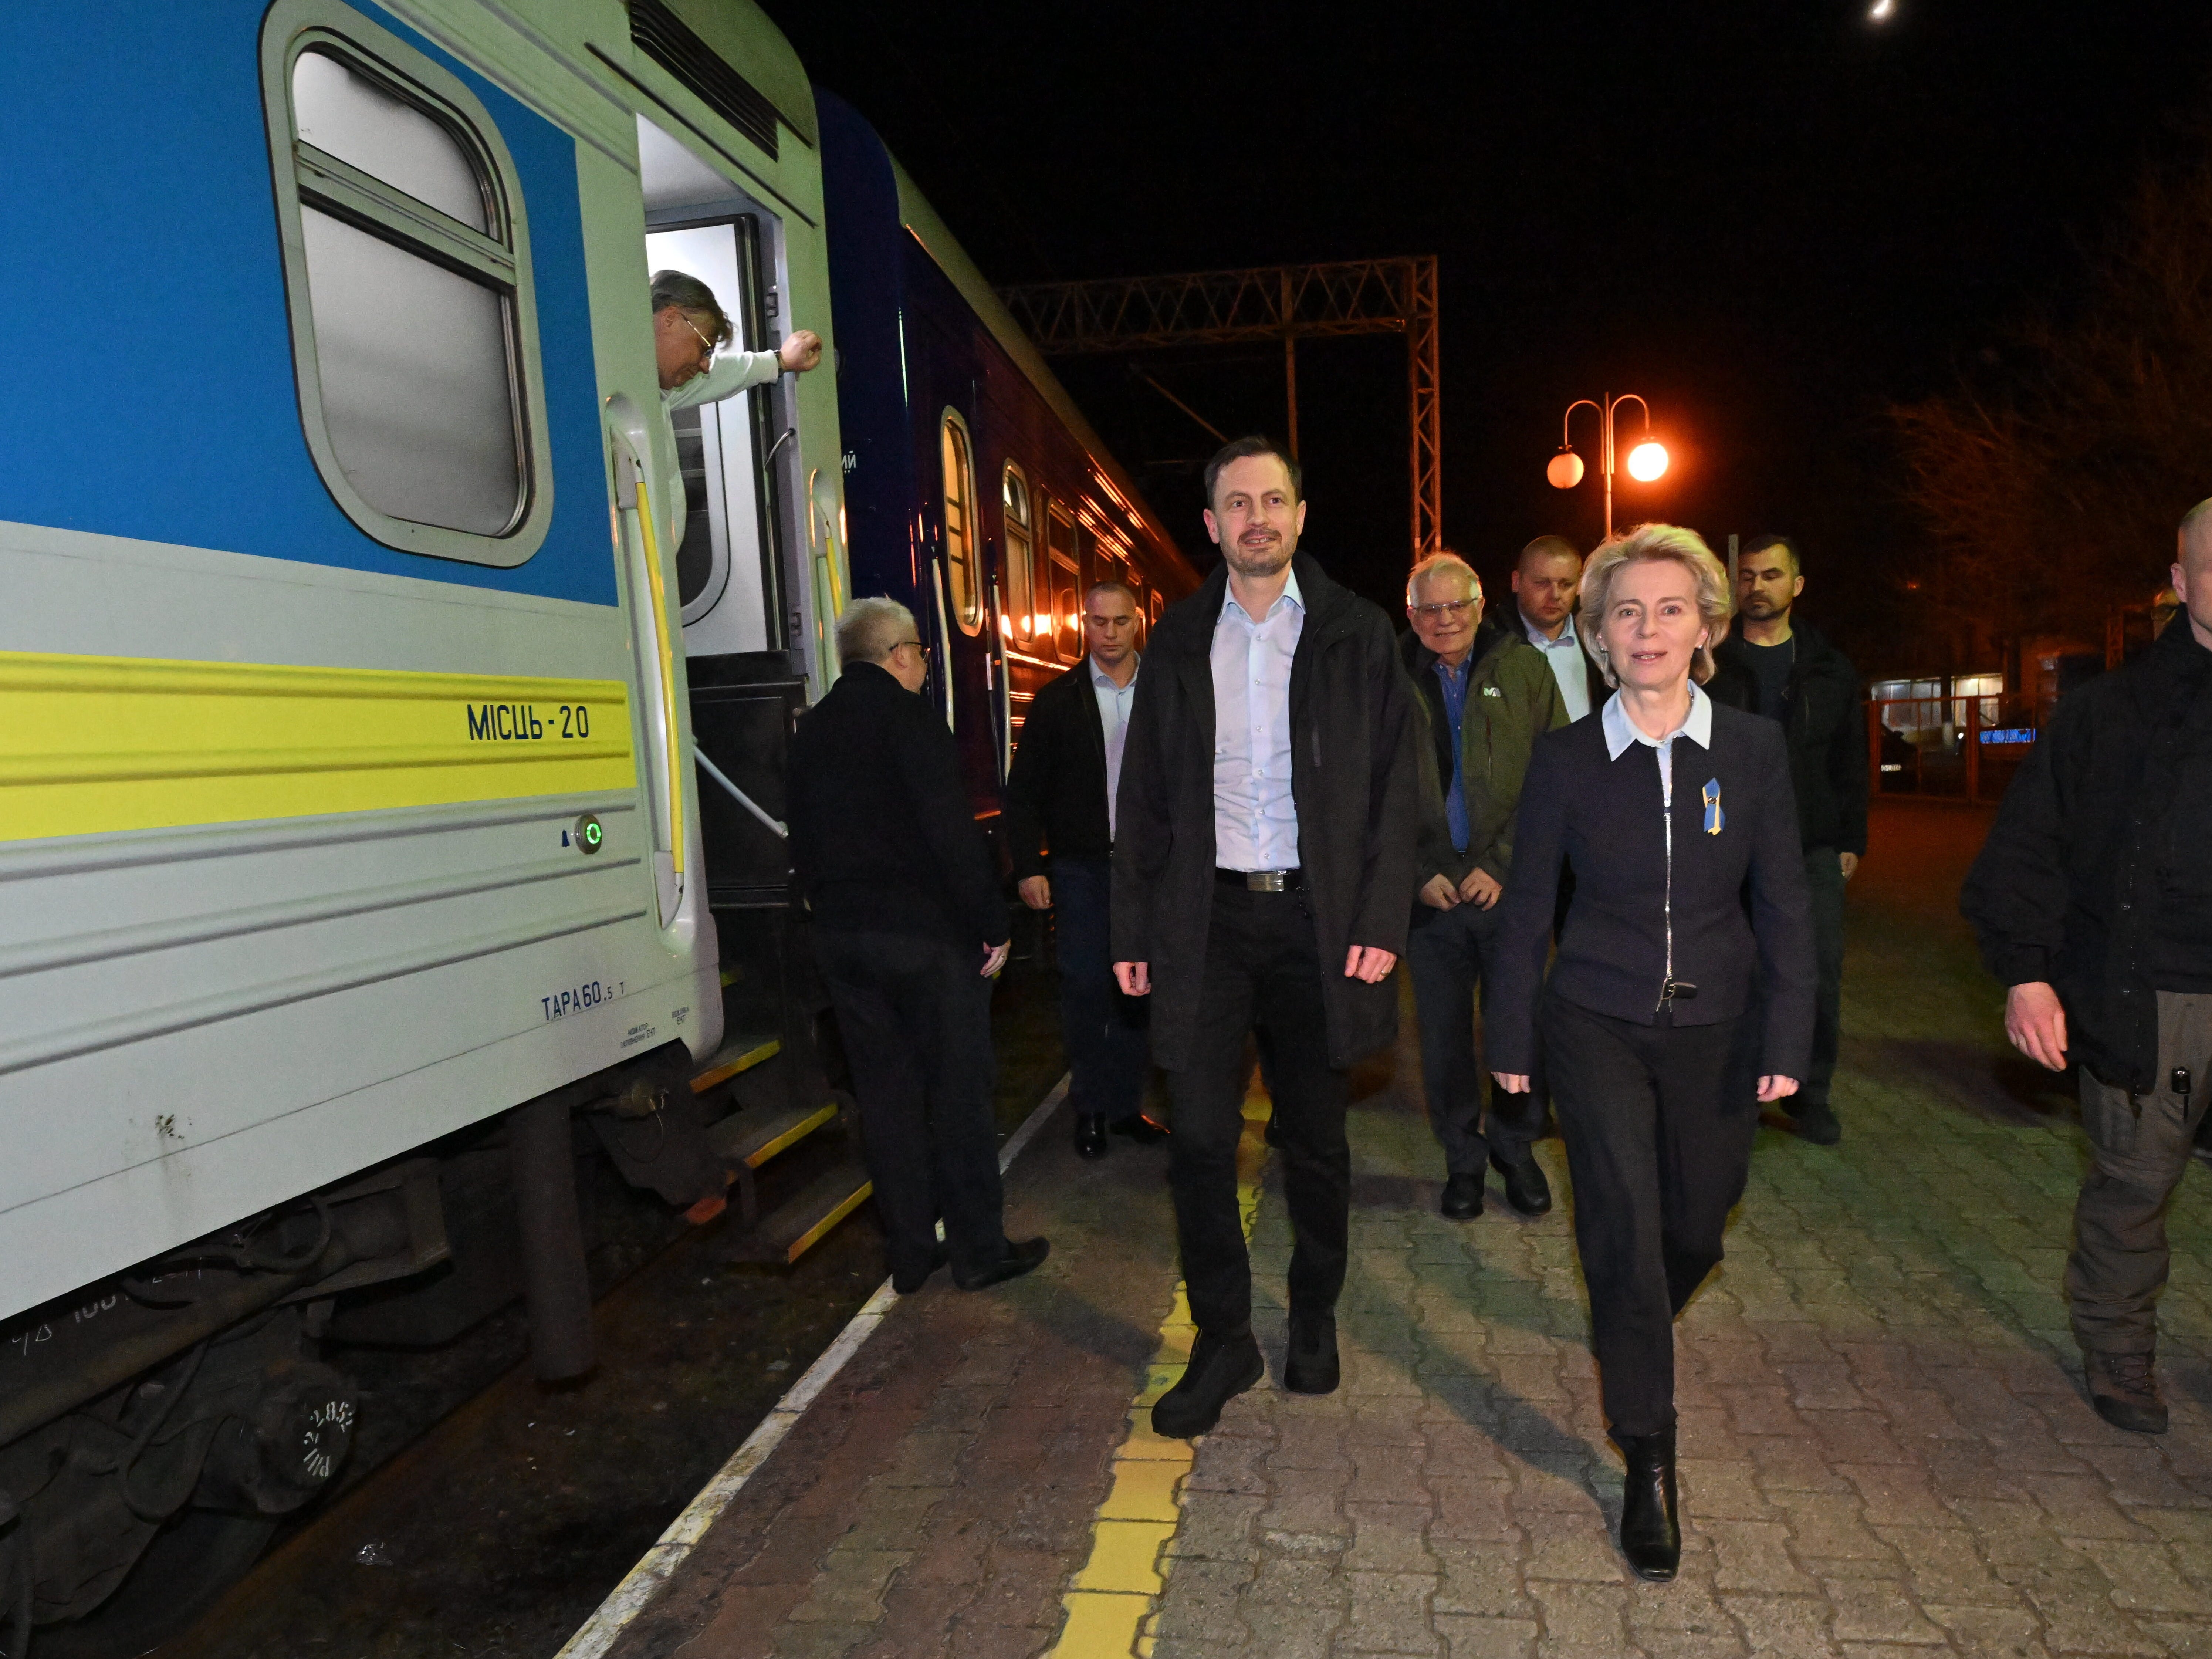 Die Präsidentin der Europäischen Kommission, Ursula von der Leyen, und der Hohe Vertreter der Europäischen Union für Außen- und Sicherheitspolitik, Josep Borrell, auf einem Bahnhof in der Nähe von Kiew.